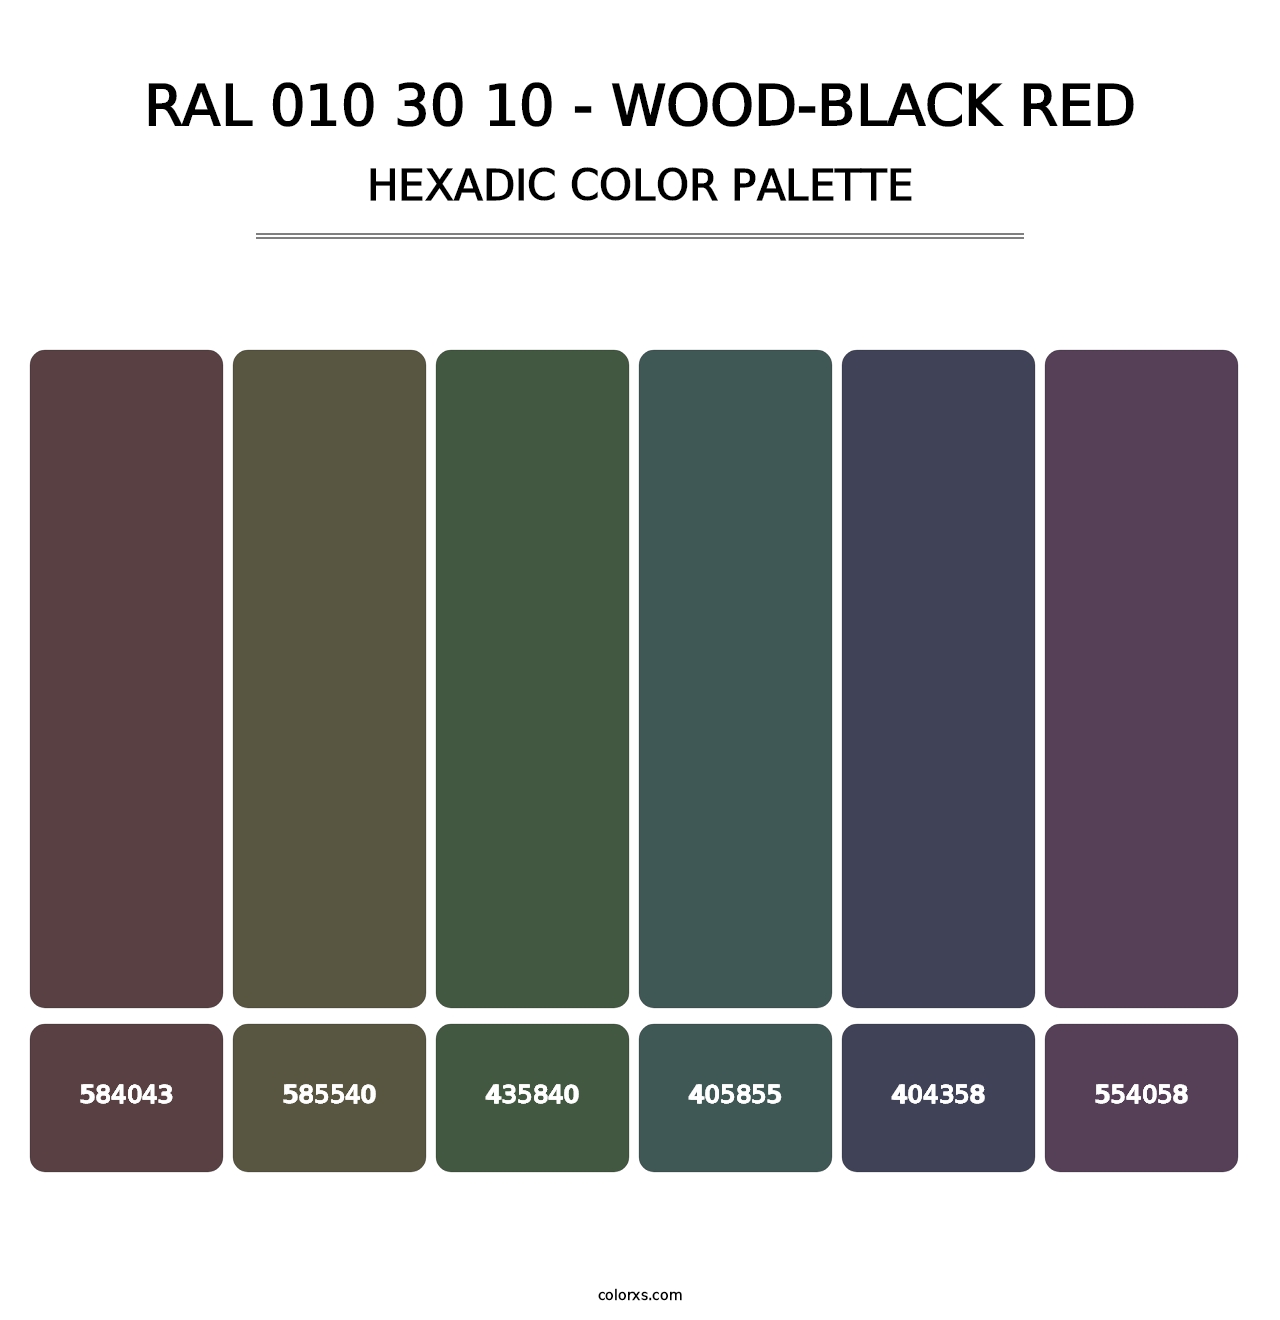 RAL 010 30 10 - Wood-Black Red - Hexadic Color Palette